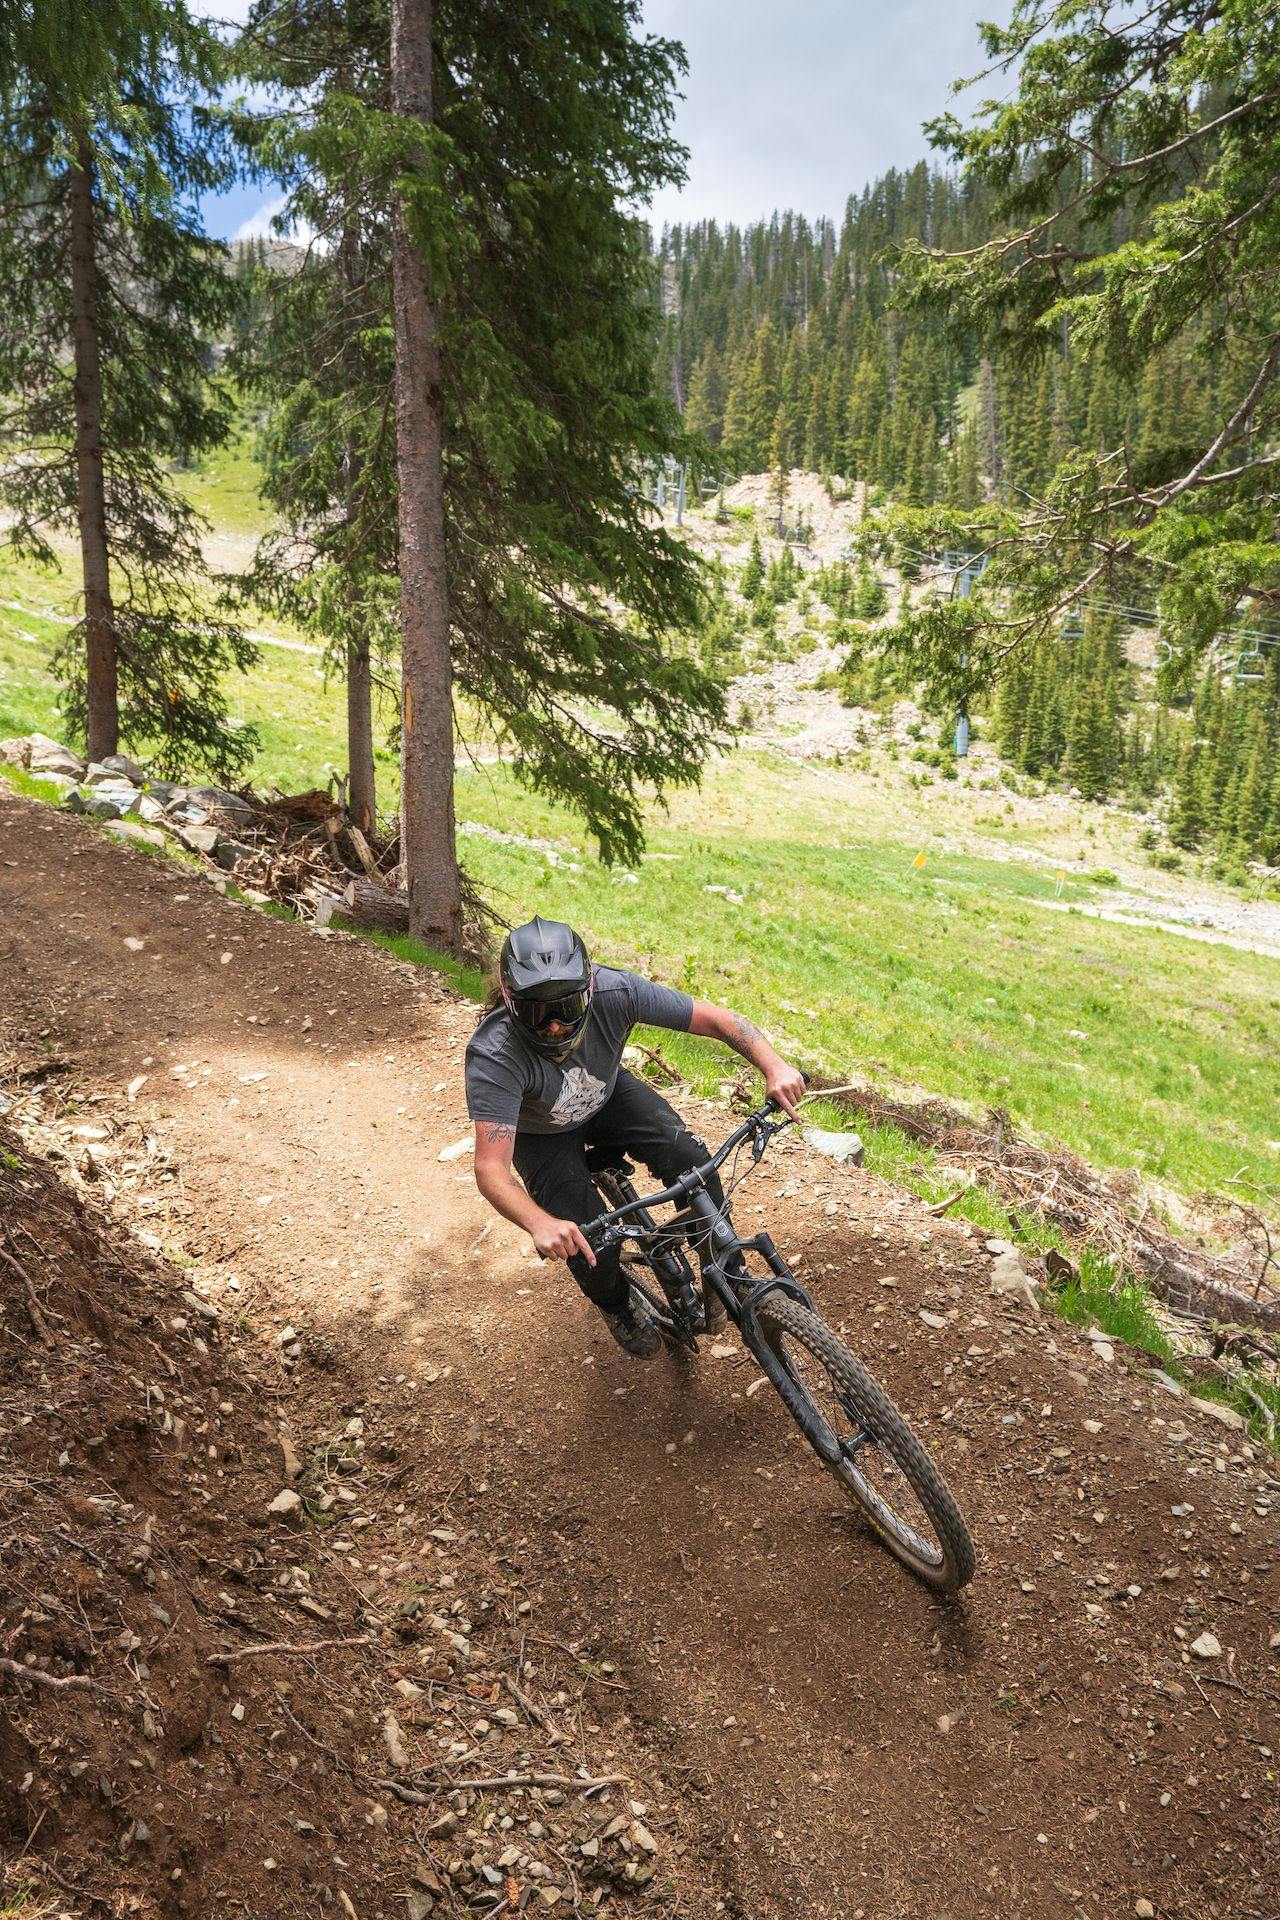 Mountain biker turns a sharp corner